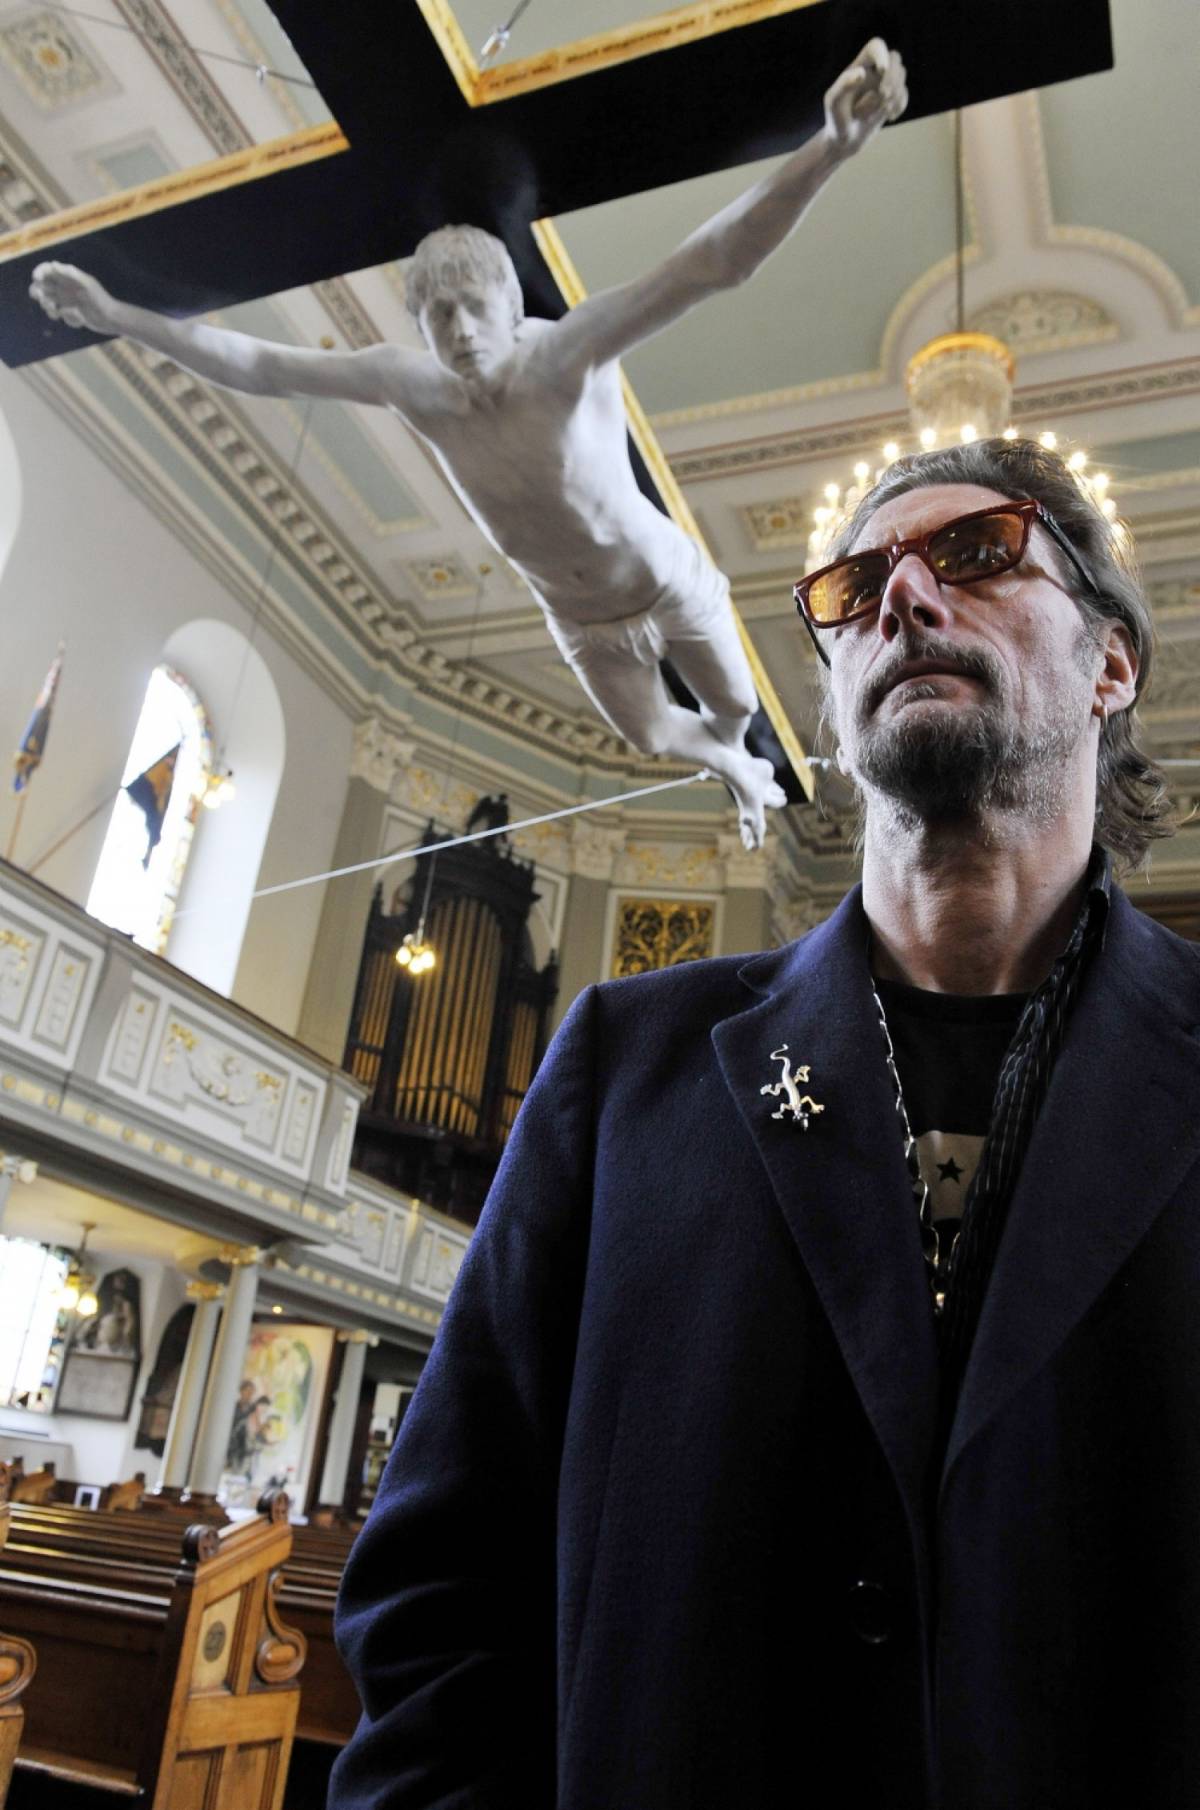 Londra, Pete Doherty "crocifisso" appeso nella navata di una chiesa